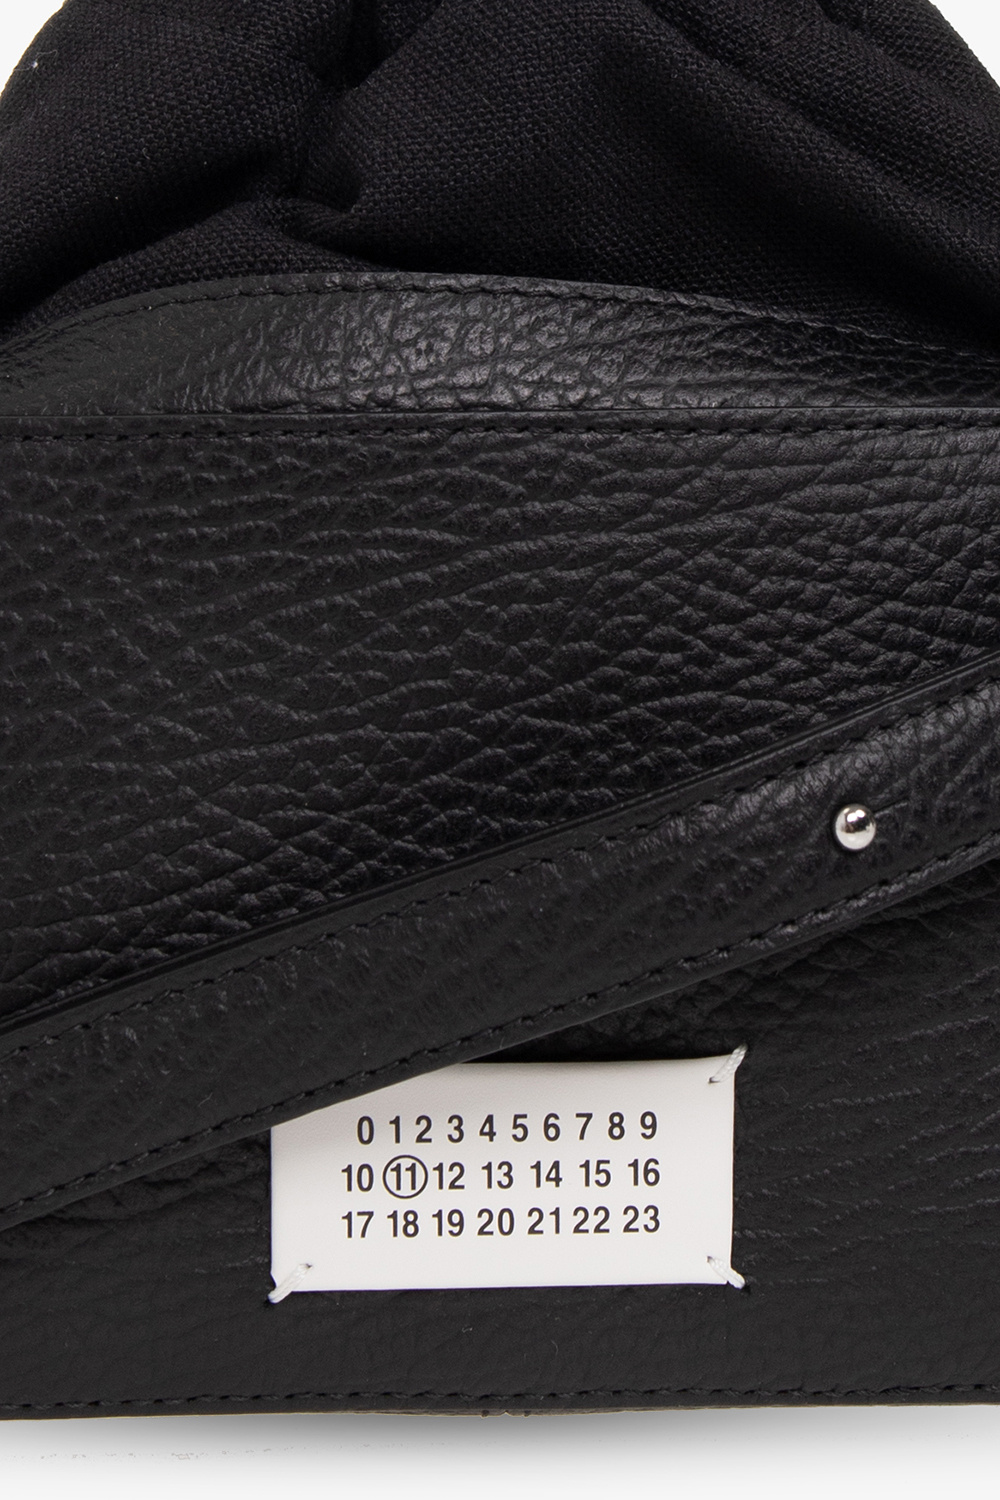 Maison Margiela '5Gucci shoulder bag in black monogram leather